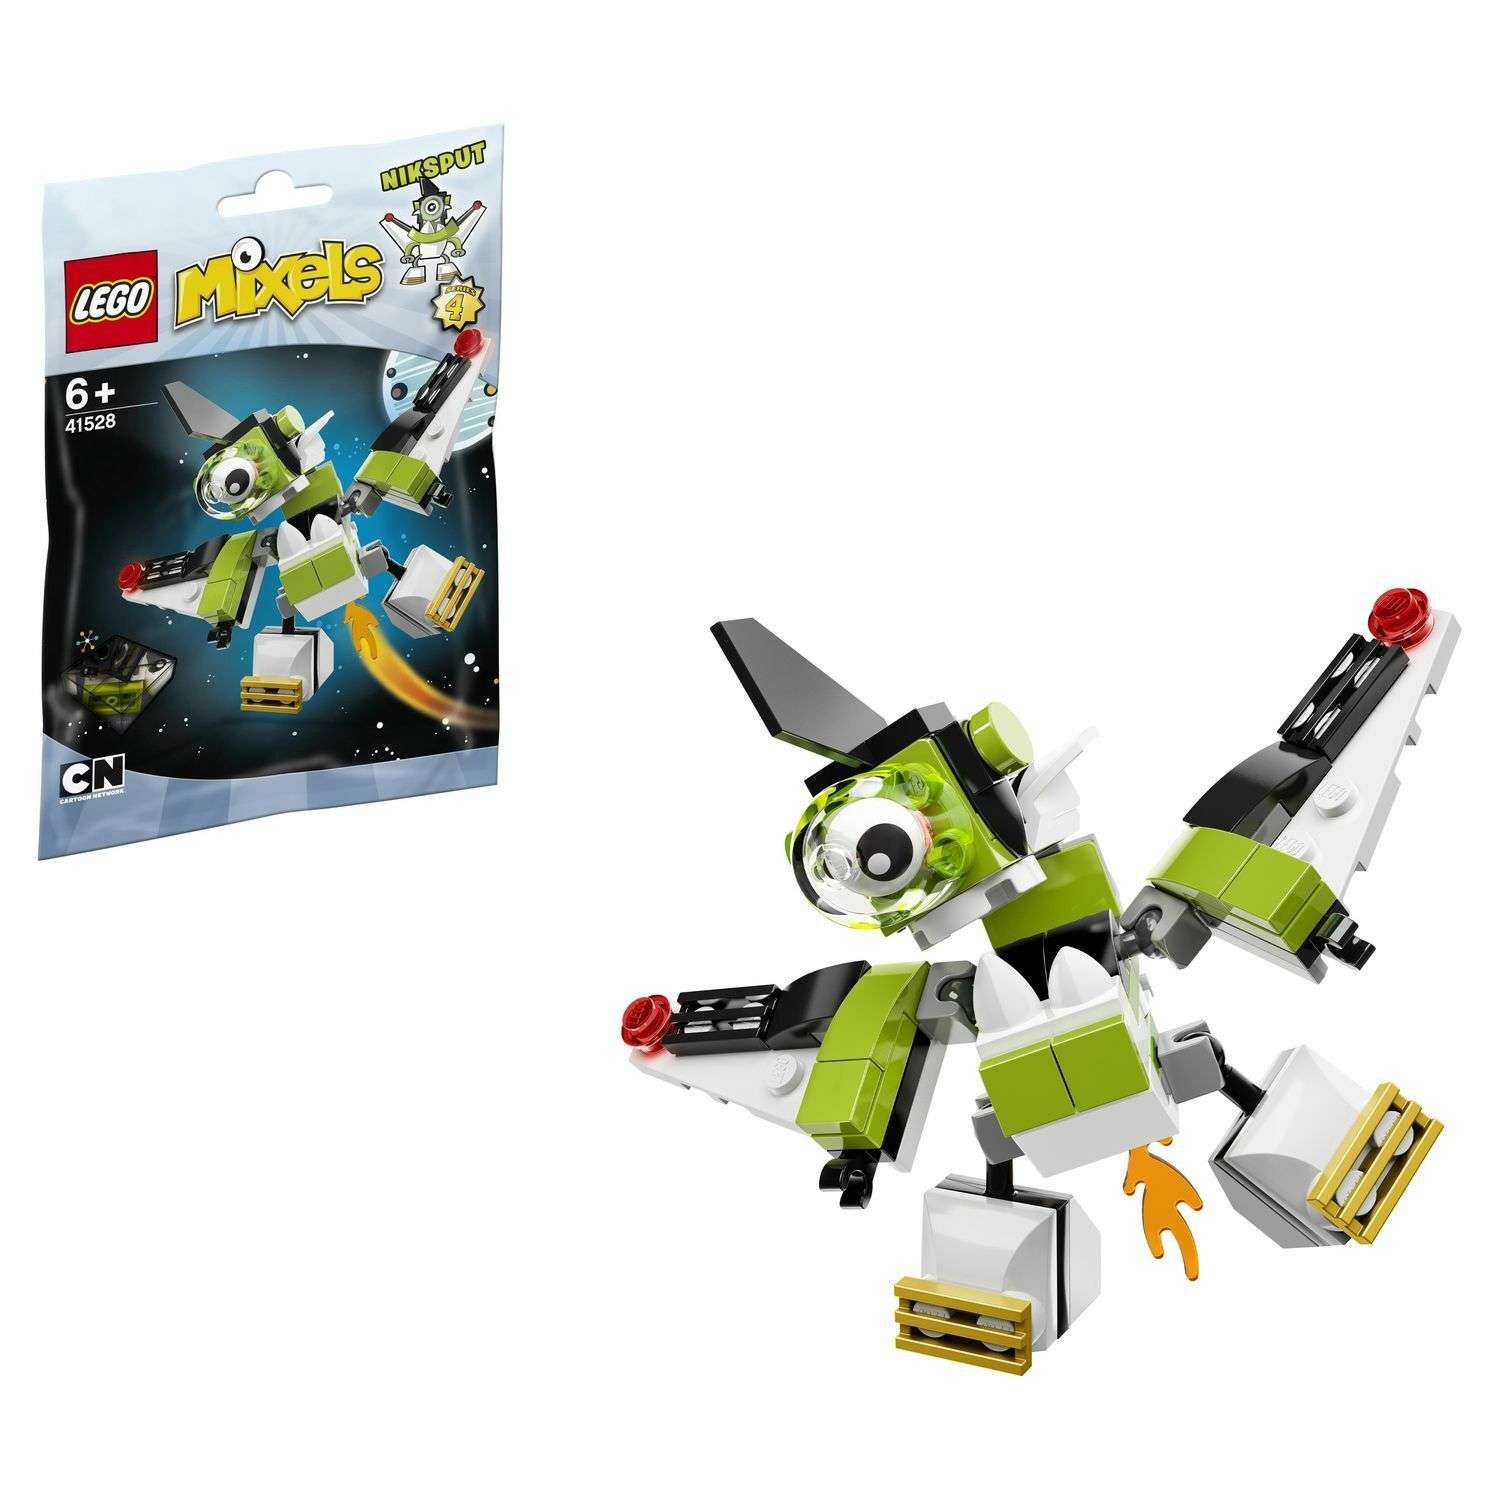 Конструктор LEGO Mixels Никспут (41528) - фото 1